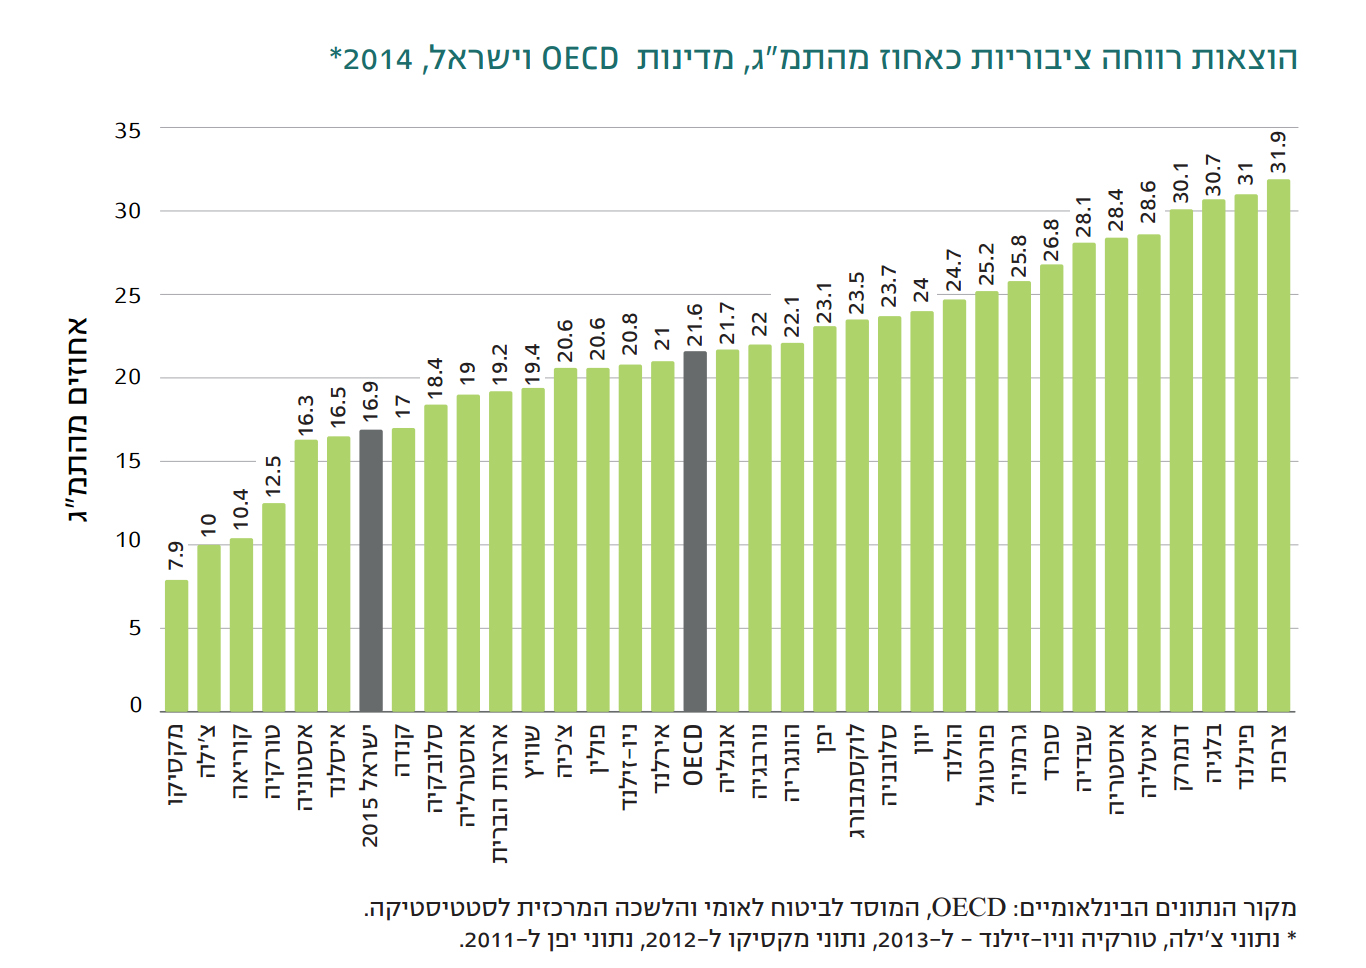 הוצאות רווחה ציבוריות כאחוז מהתמ"ג, מדינות OECD וישראל, 2014 (מתוך הדוח השנתי 2015 של המוסד לביטוח לאומי).